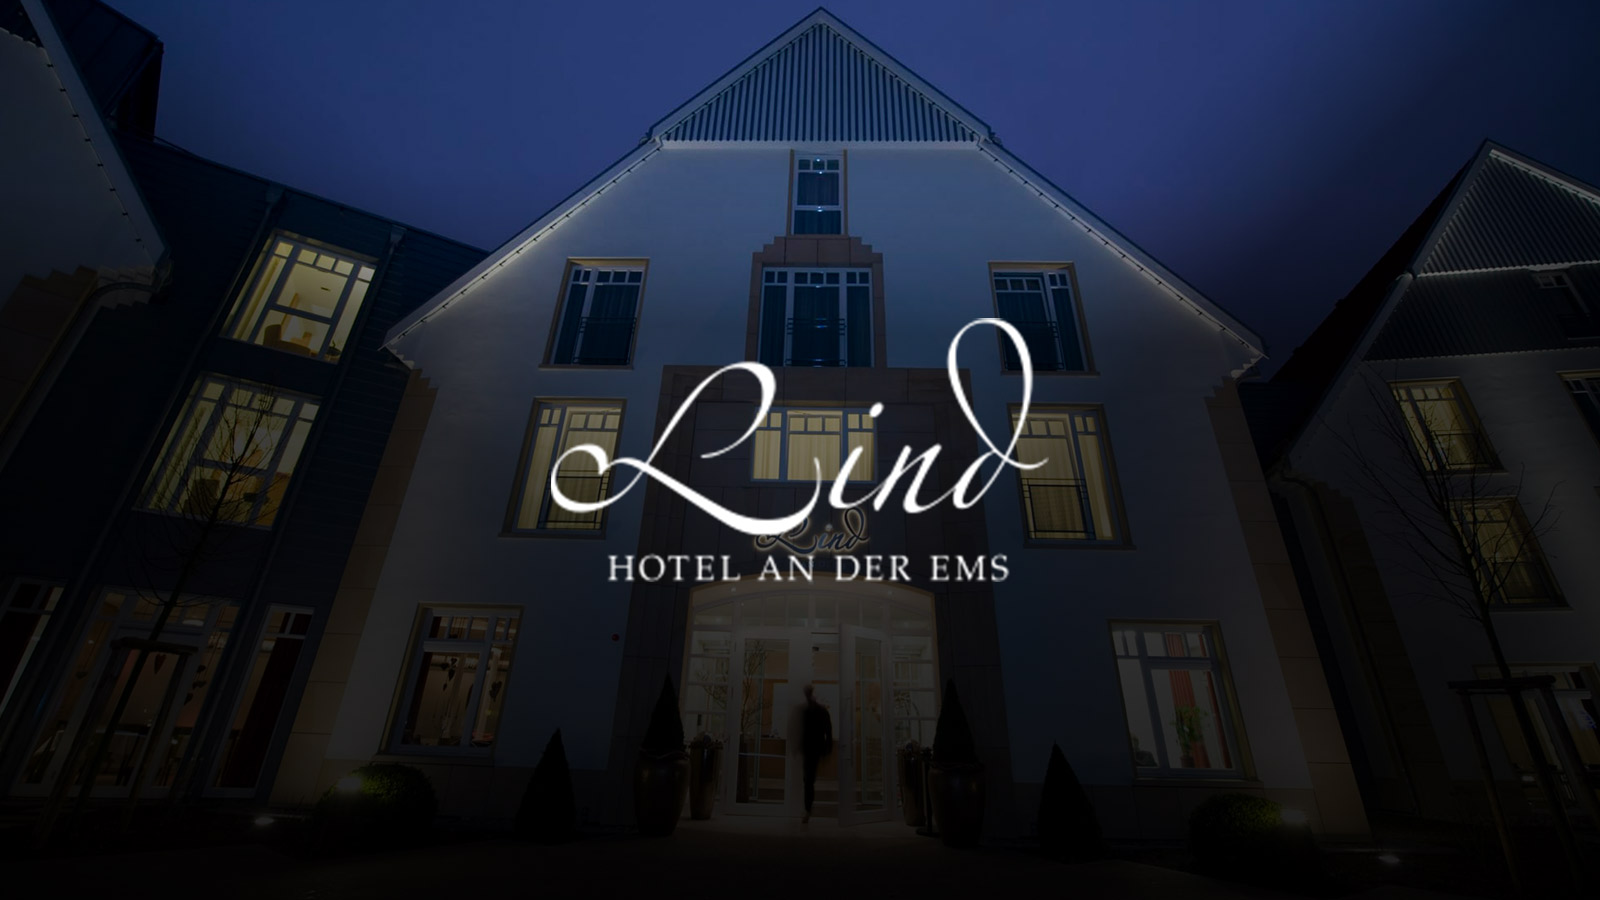 Lind-Hotel-and-der-Ems-logo